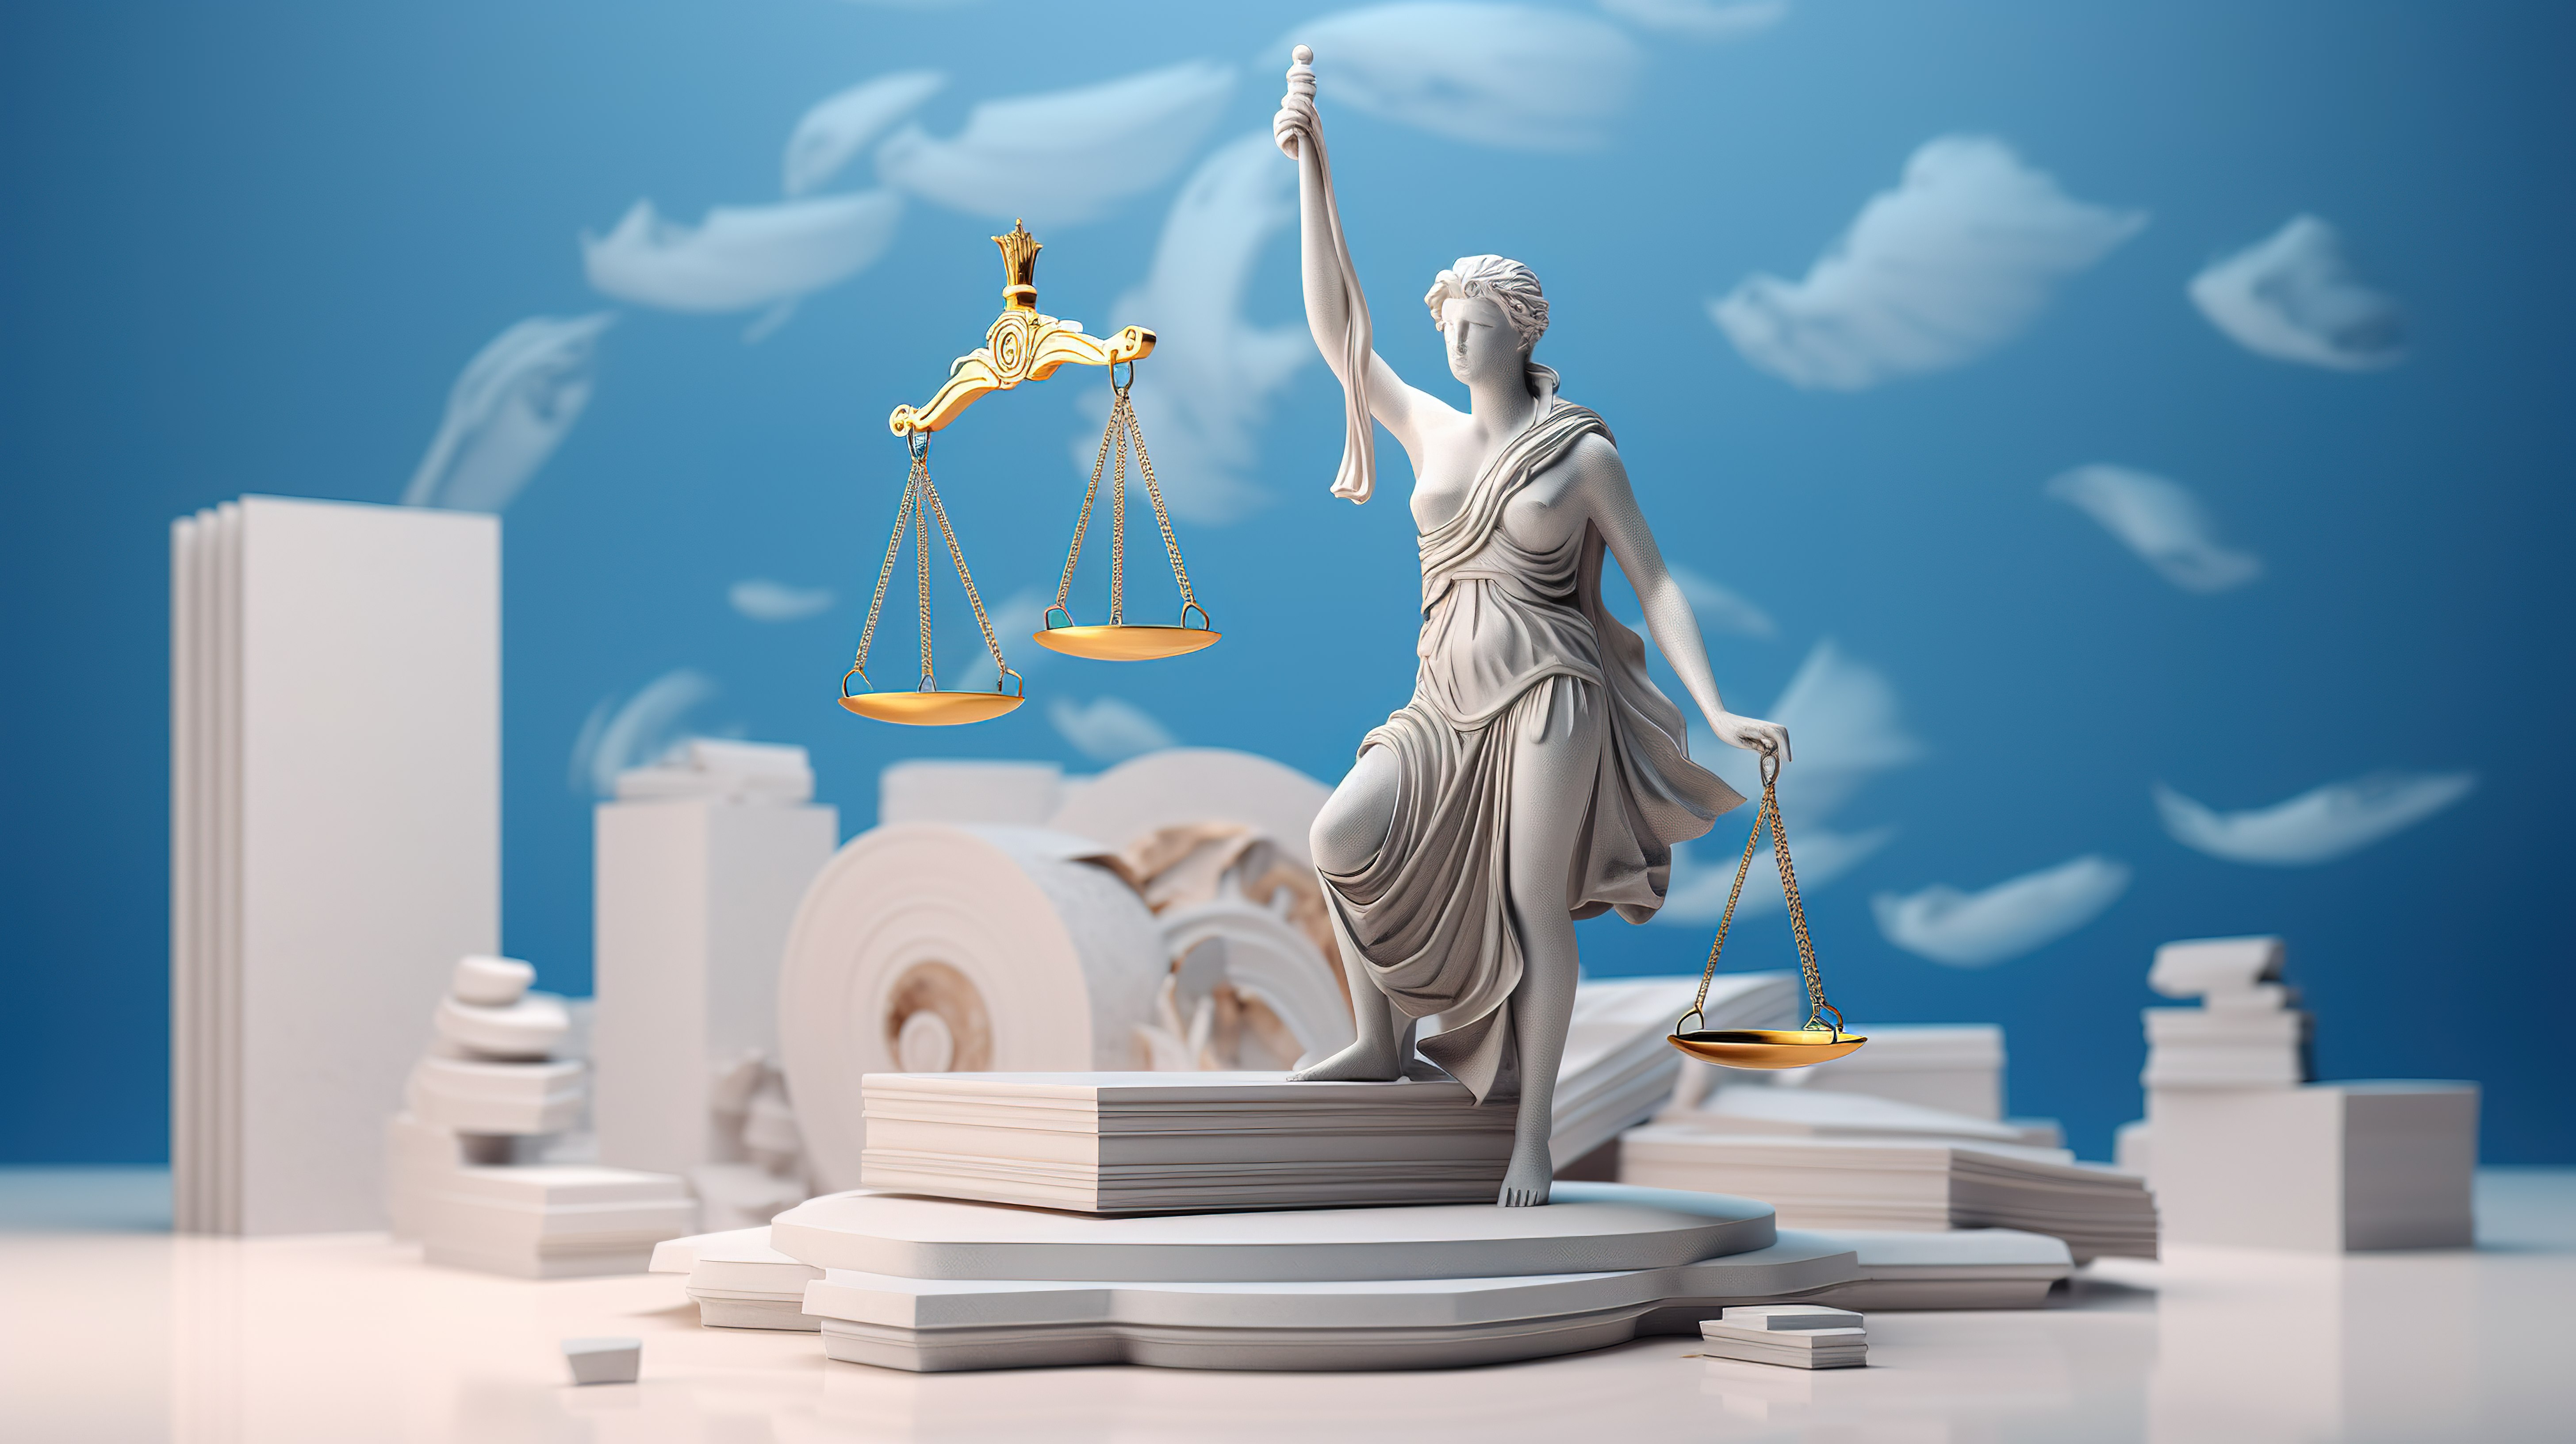 希腊信息图表和社交媒体内容法律体系的 3D 渲染图片